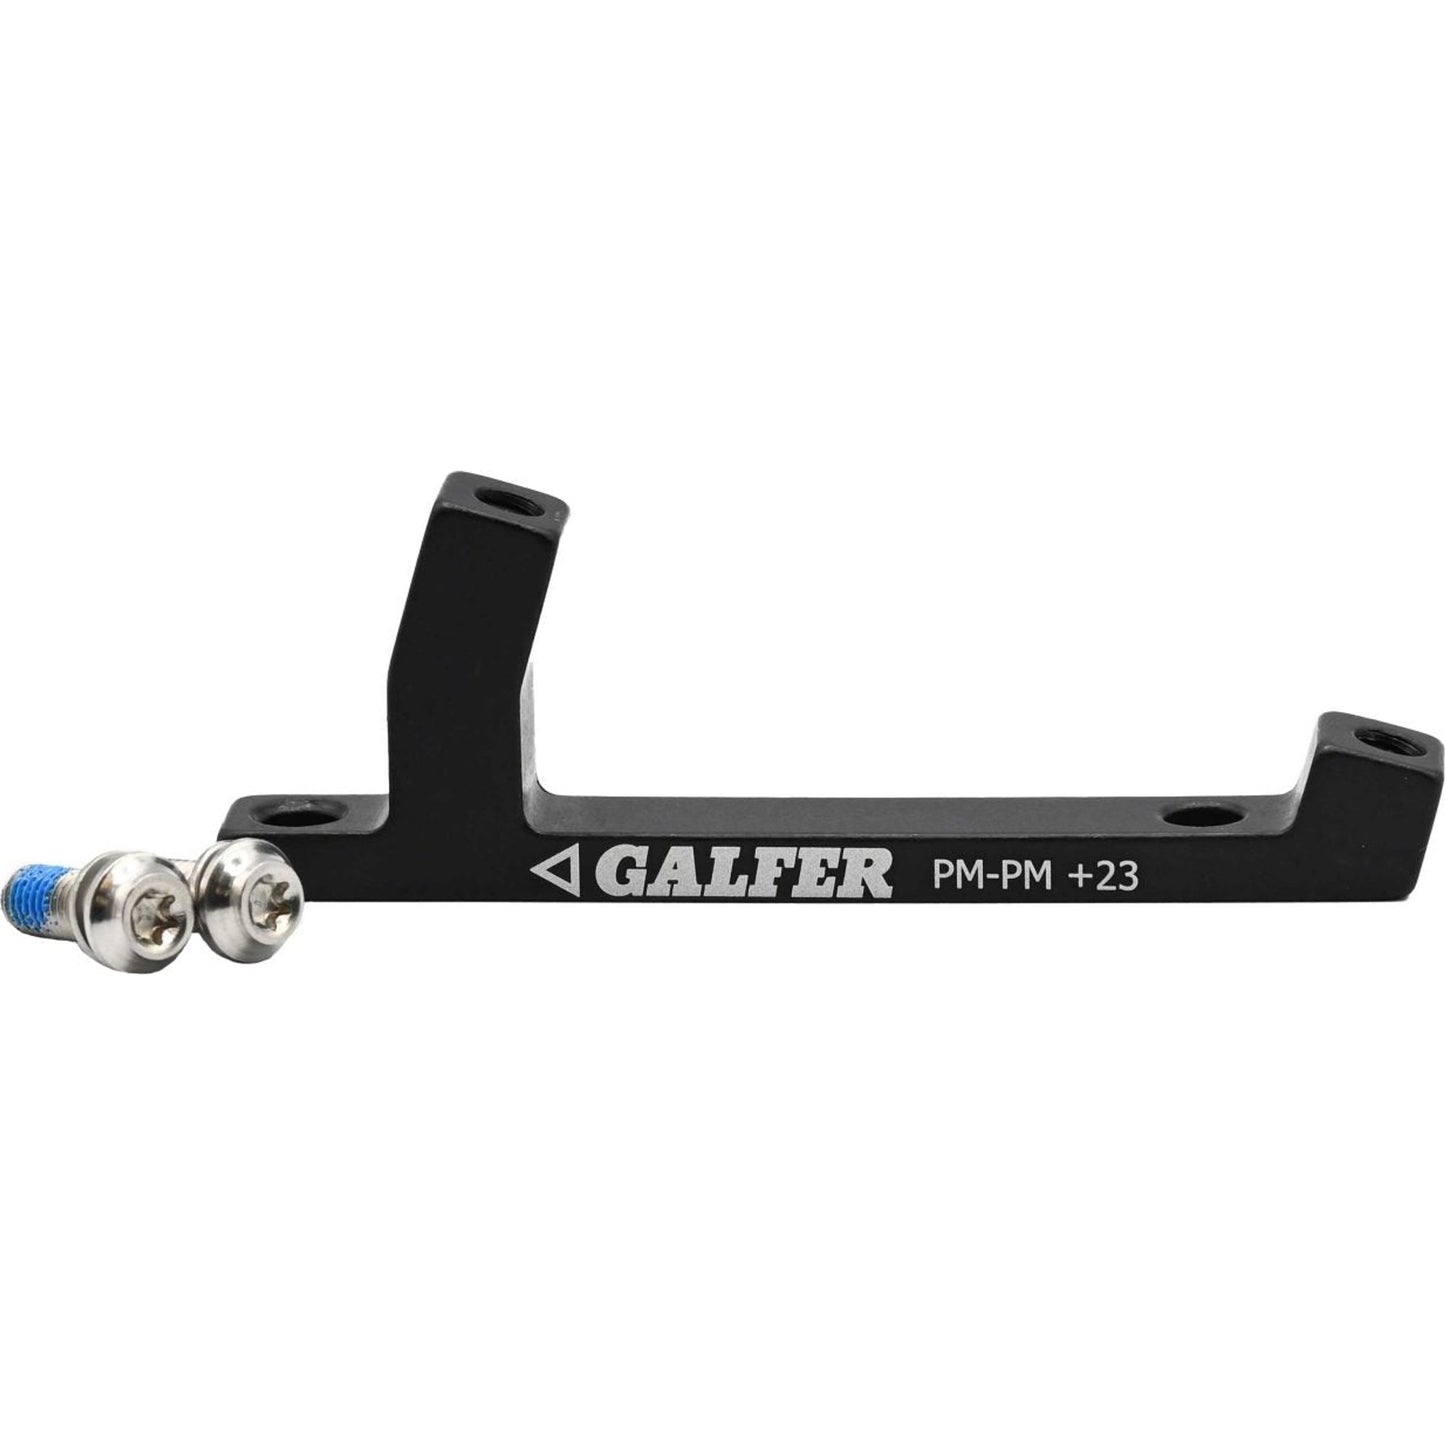 Galfer Post Frame Or Fork To Post Caliper Brake Mount - F 180-203mm 200-223mm - R 180-203mm 200-223mm - Post Frame Or Fork To Post Caliper - 23mm Increase